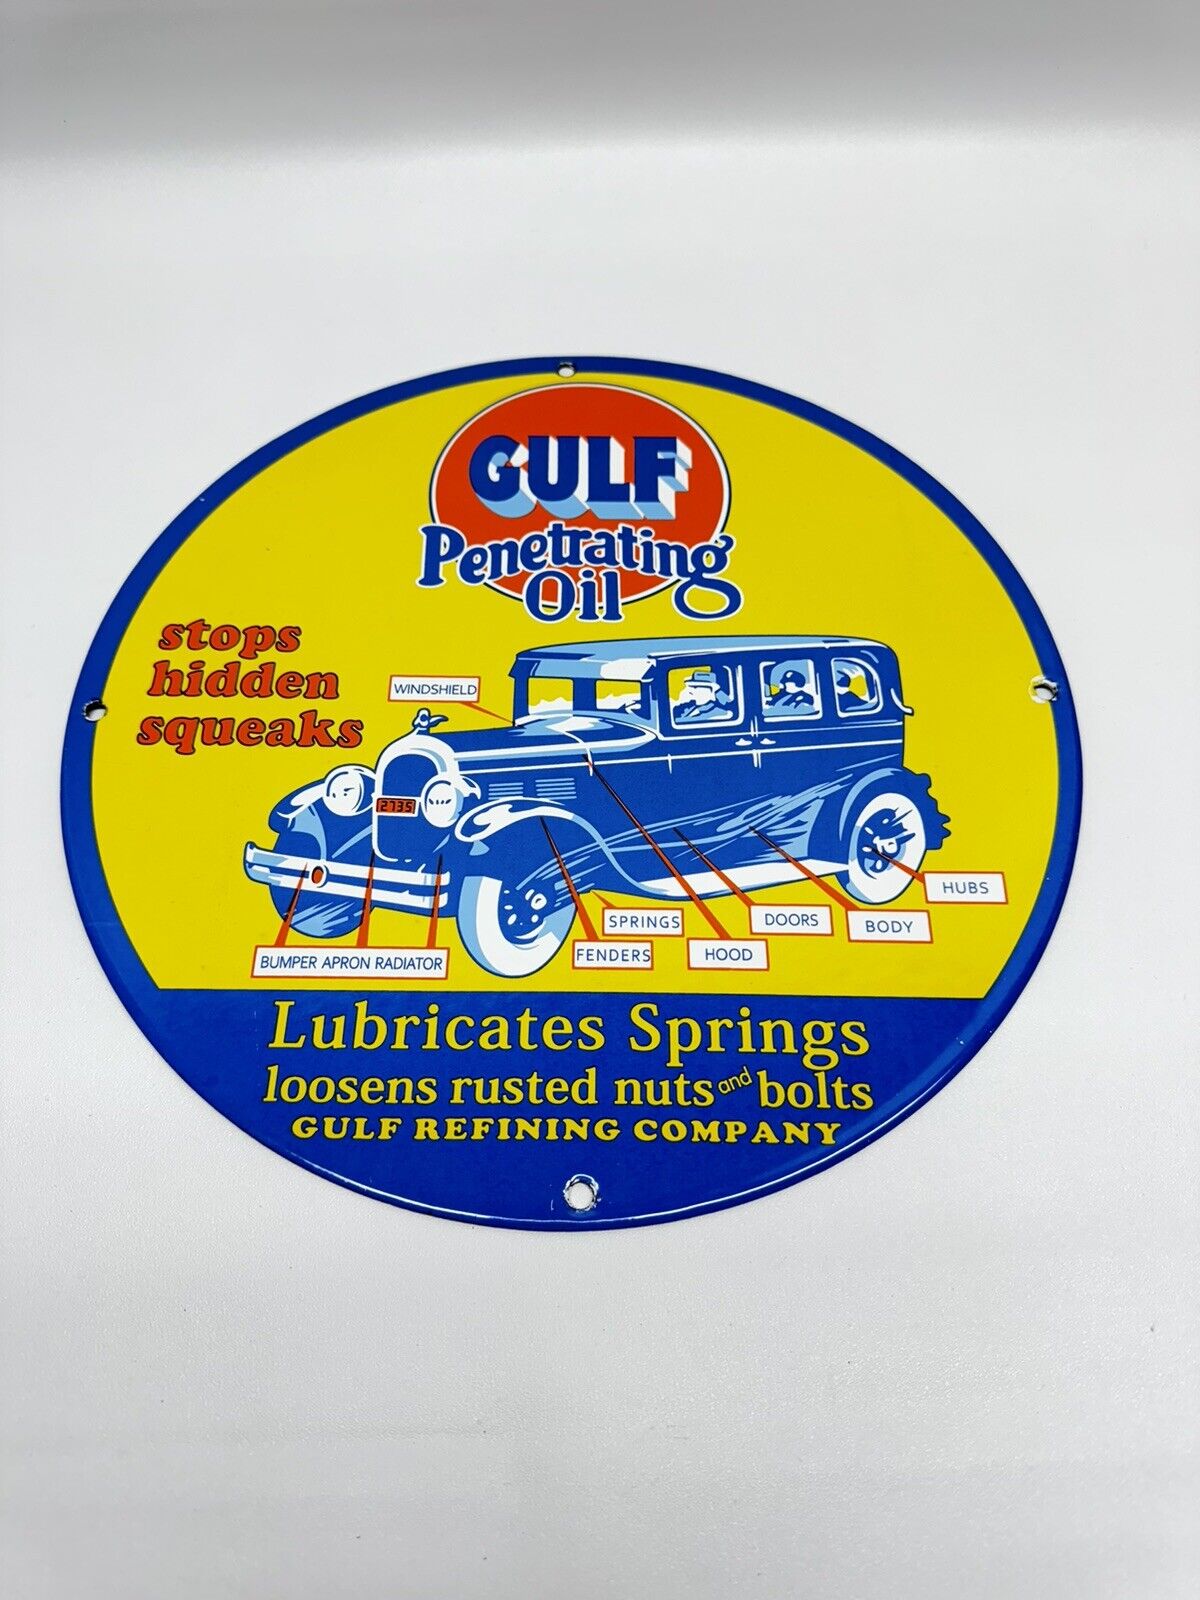 Gulf Penetrating Oil Vintage Style Porcelain Enamel Gasoline Station Sign